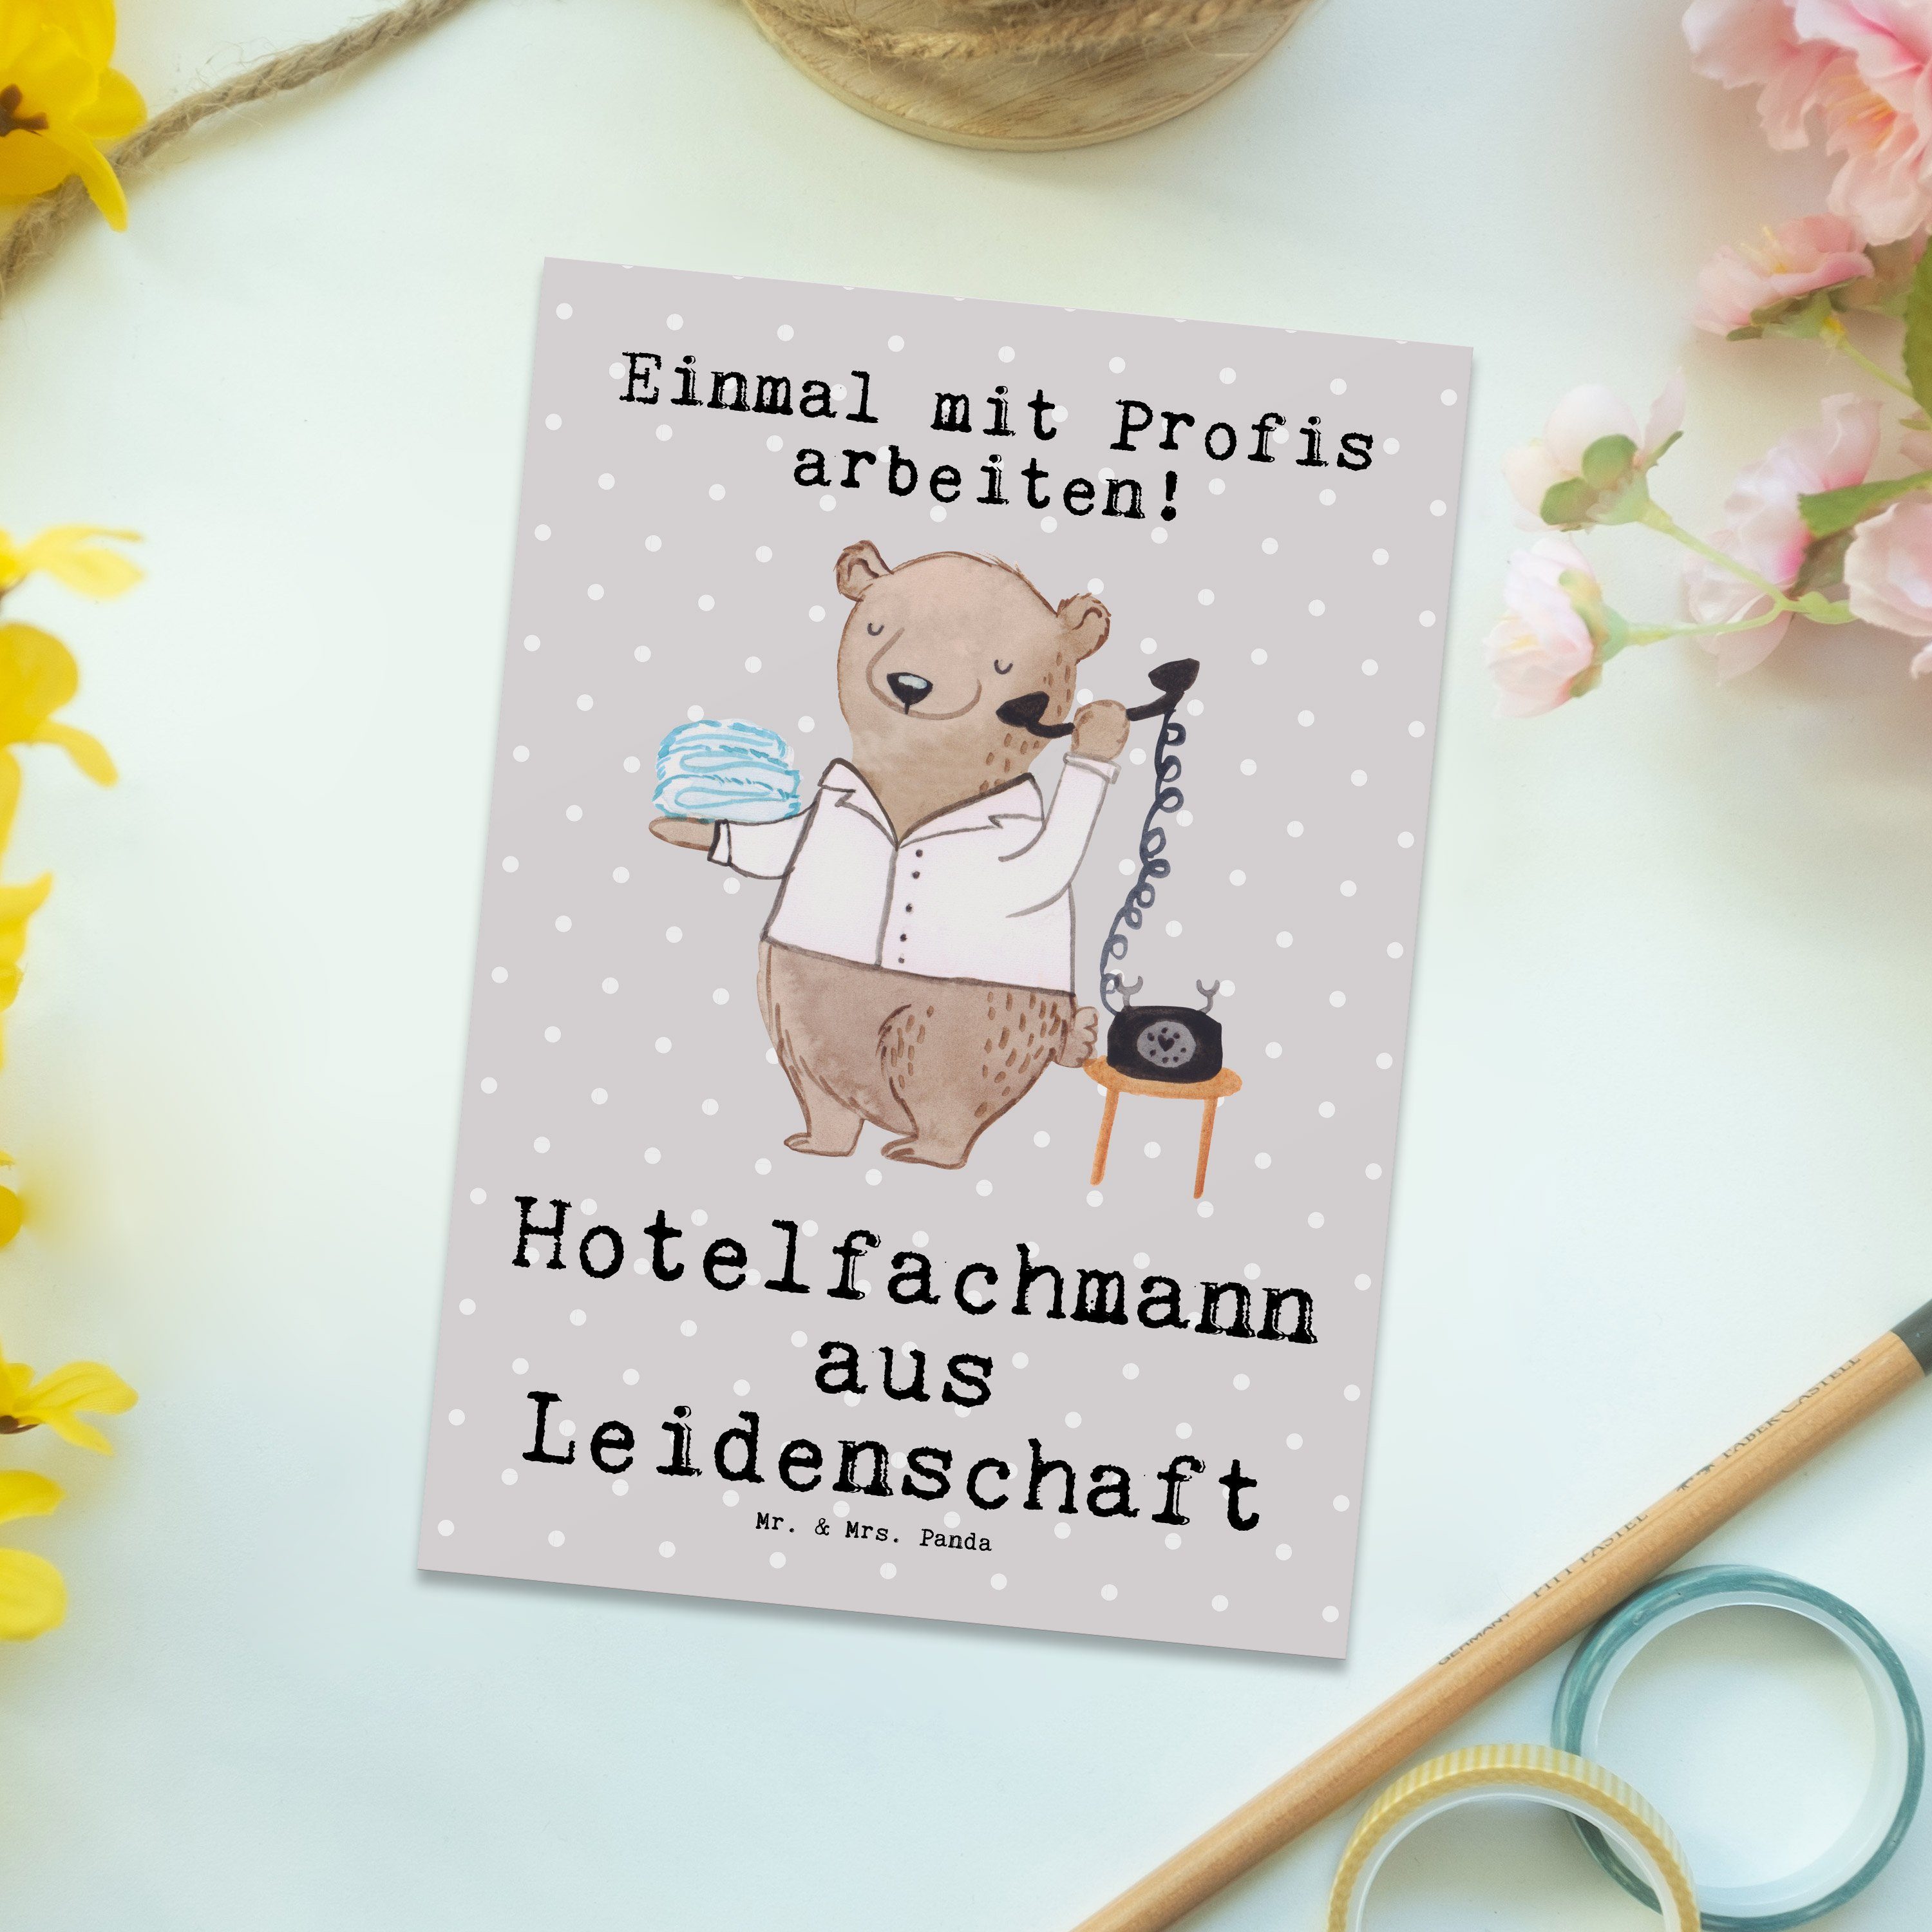 Mr. & Mrs. Panda Postkarte Hotelfachmann aus Leidenschaft - Grau Pastell - Geschenk, Hotelier, D